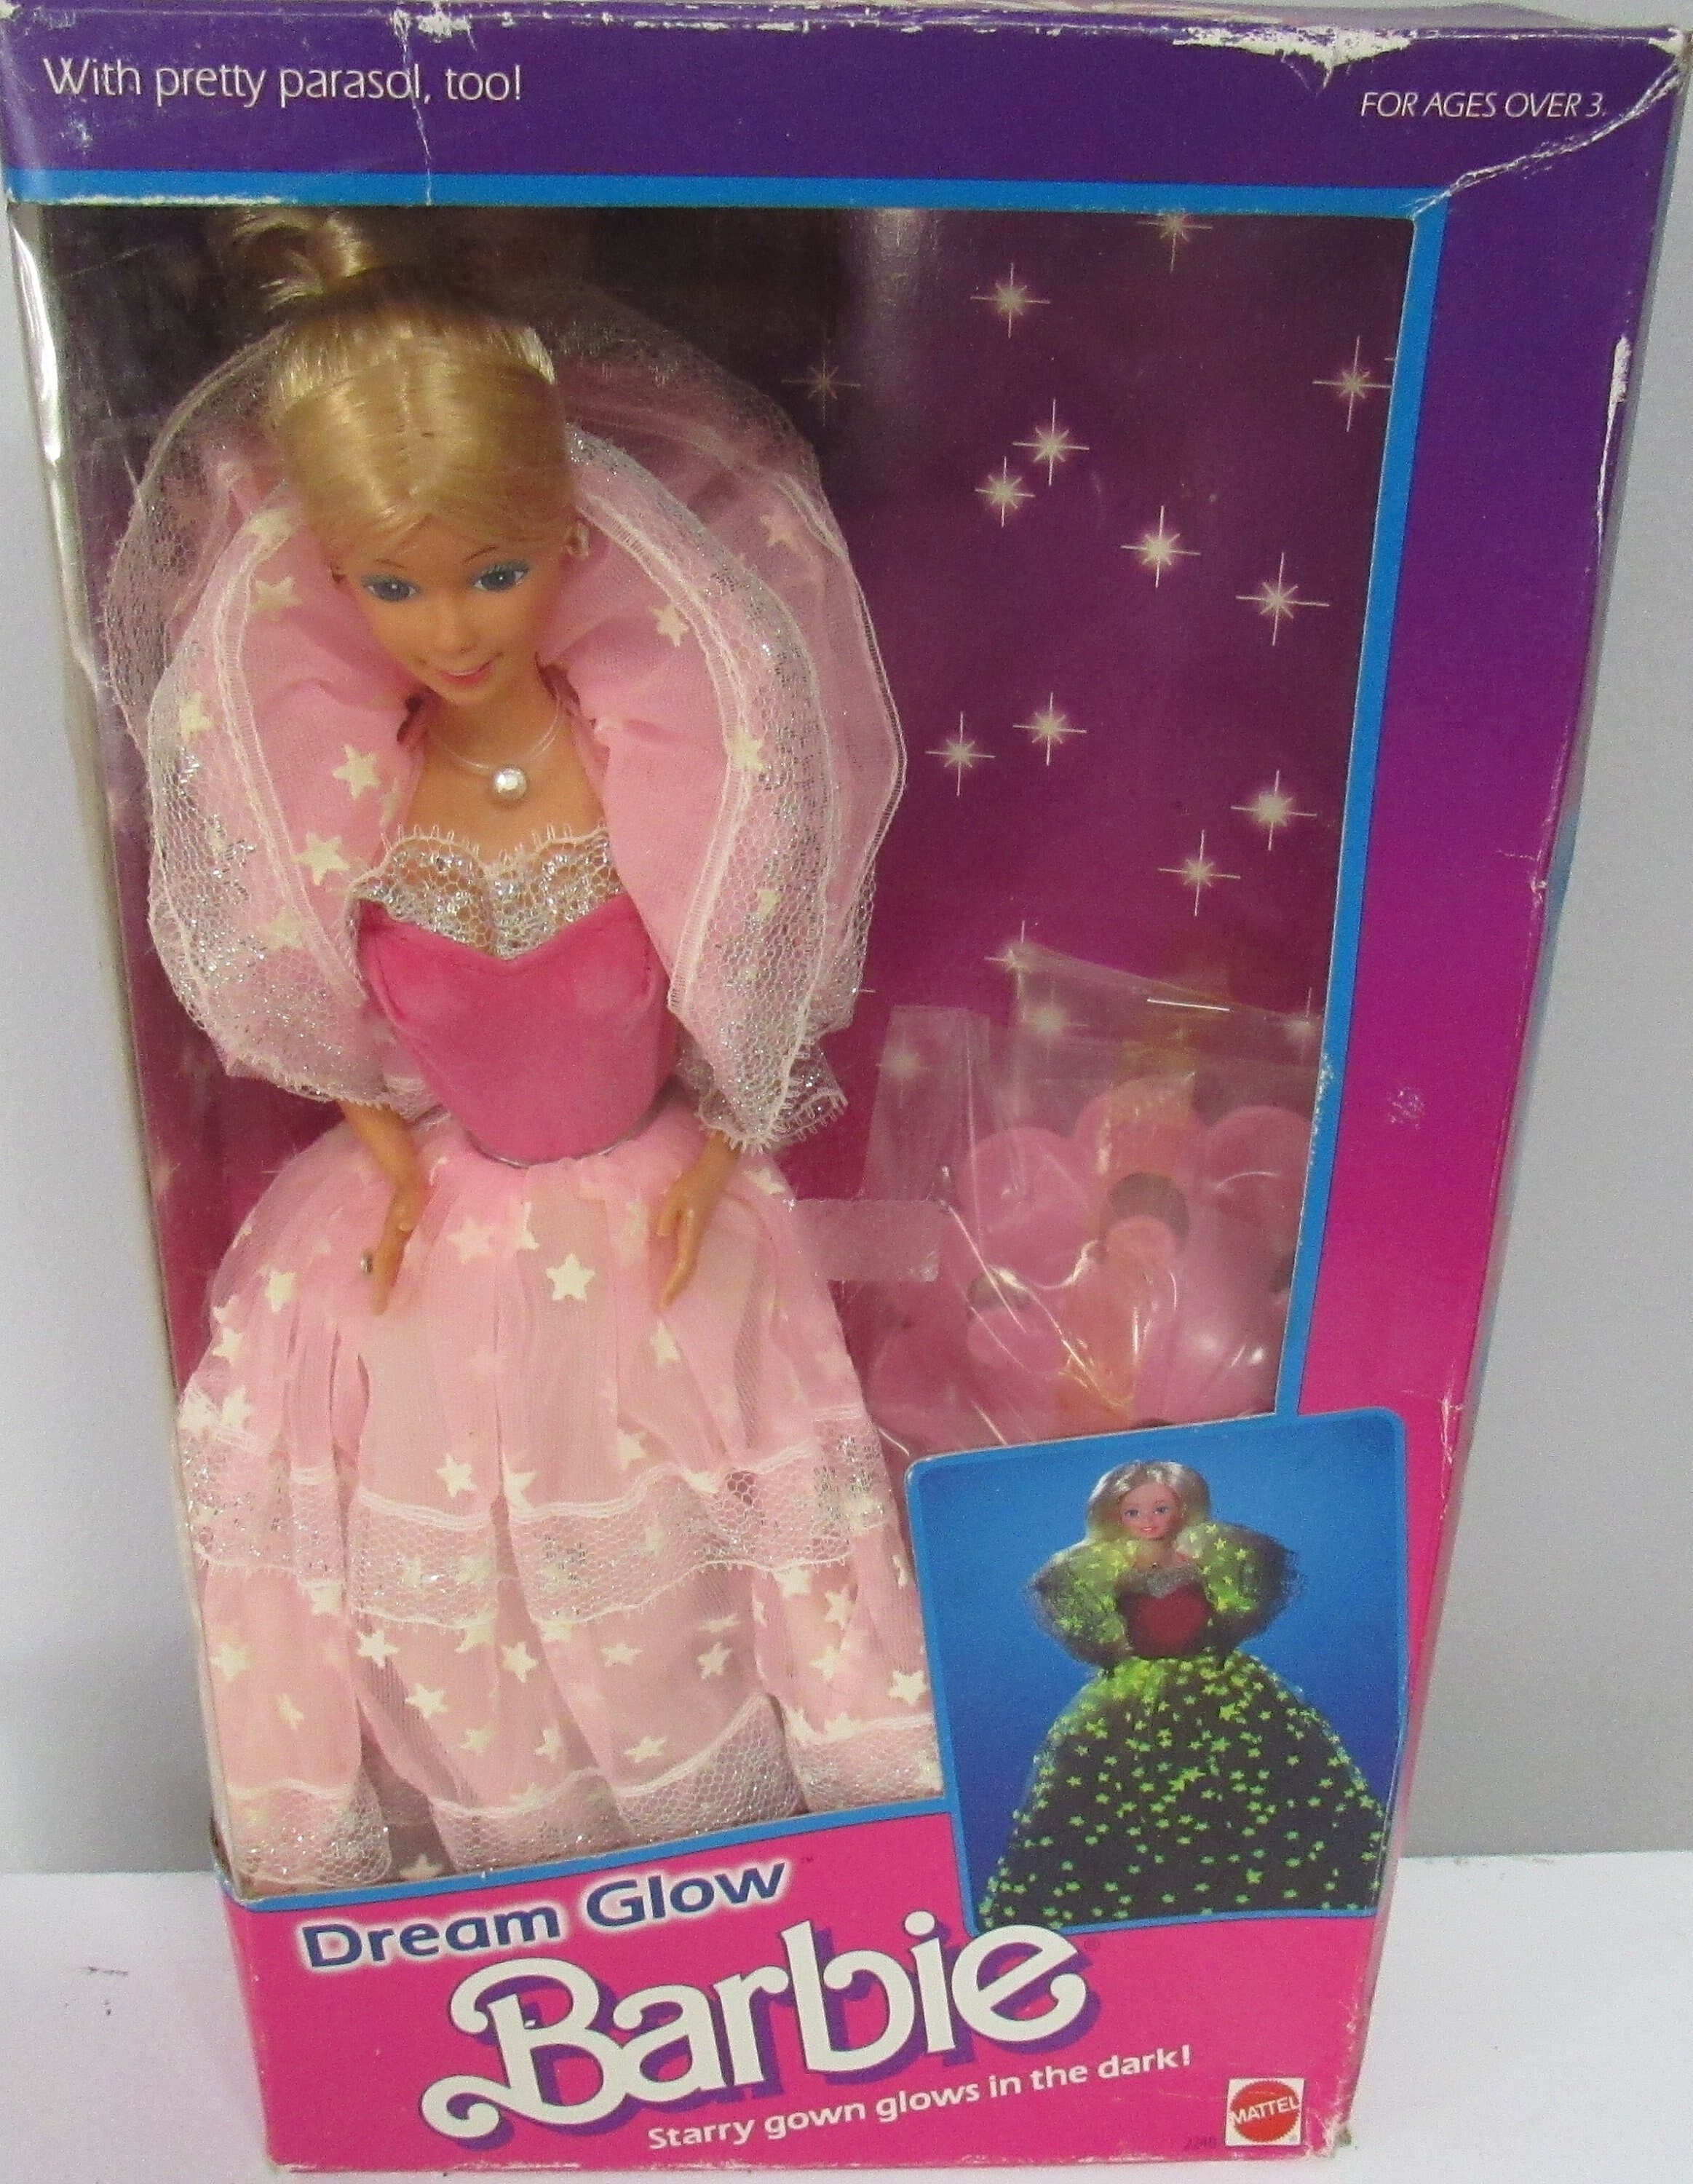 MIB NRFB Dream Glow Barbie 2248 Circa 1985 - Etsy